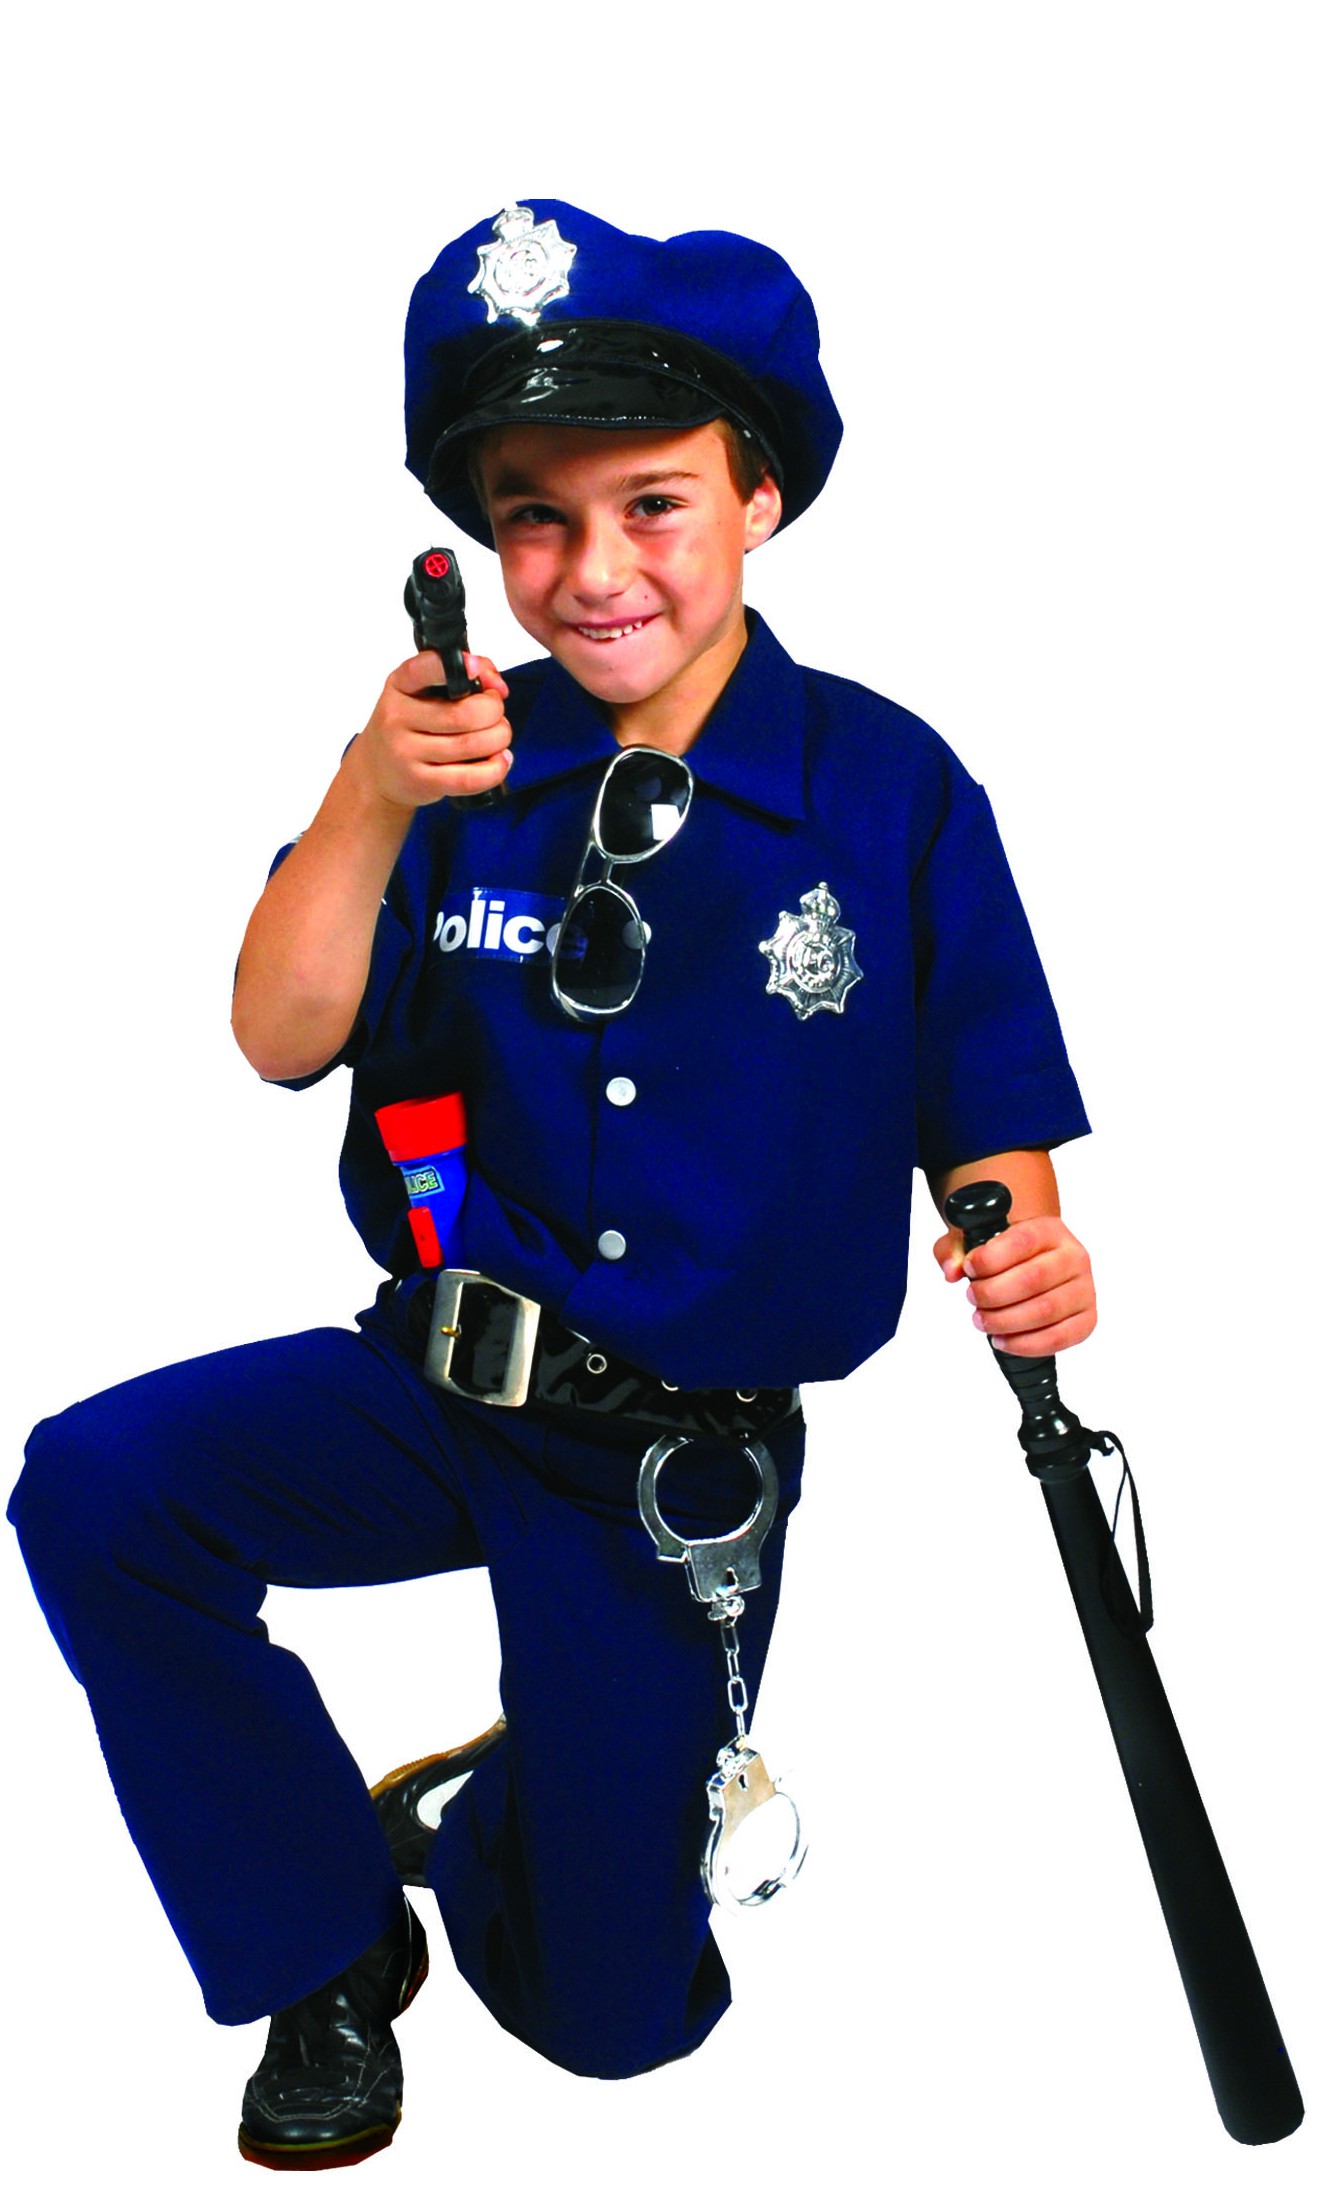 Uniforme de Policier/ policière avec Accessoires, 5-6 ans - Great